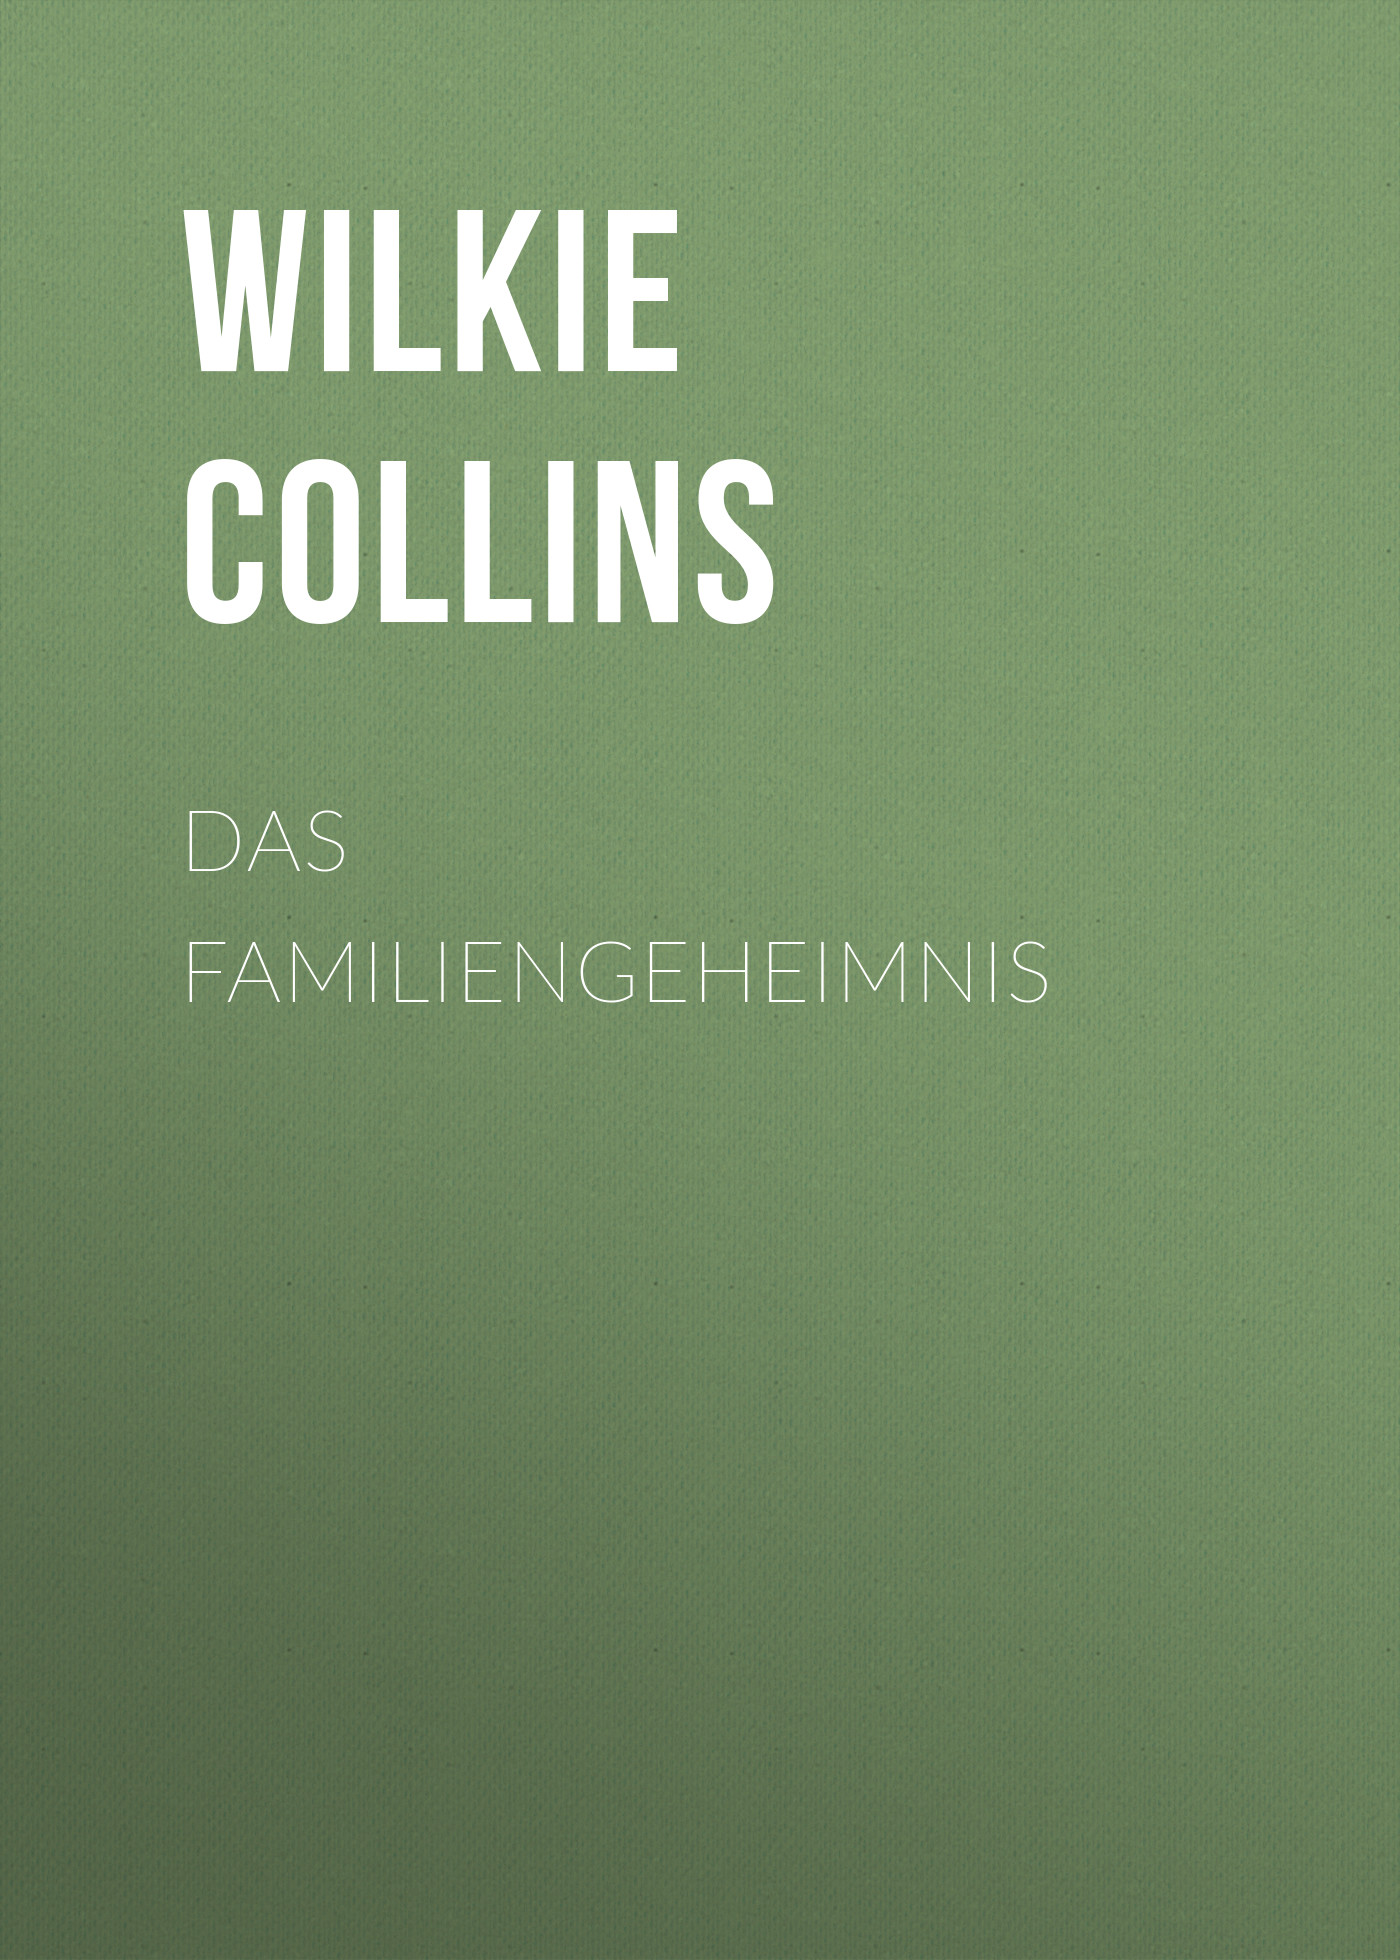 Книга Das Familiengeheimnis из серии , созданная Wilkie Collins, может относится к жанру Зарубежная классика. Стоимость электронной книги Das Familiengeheimnis с идентификатором 48634300 составляет 0 руб.